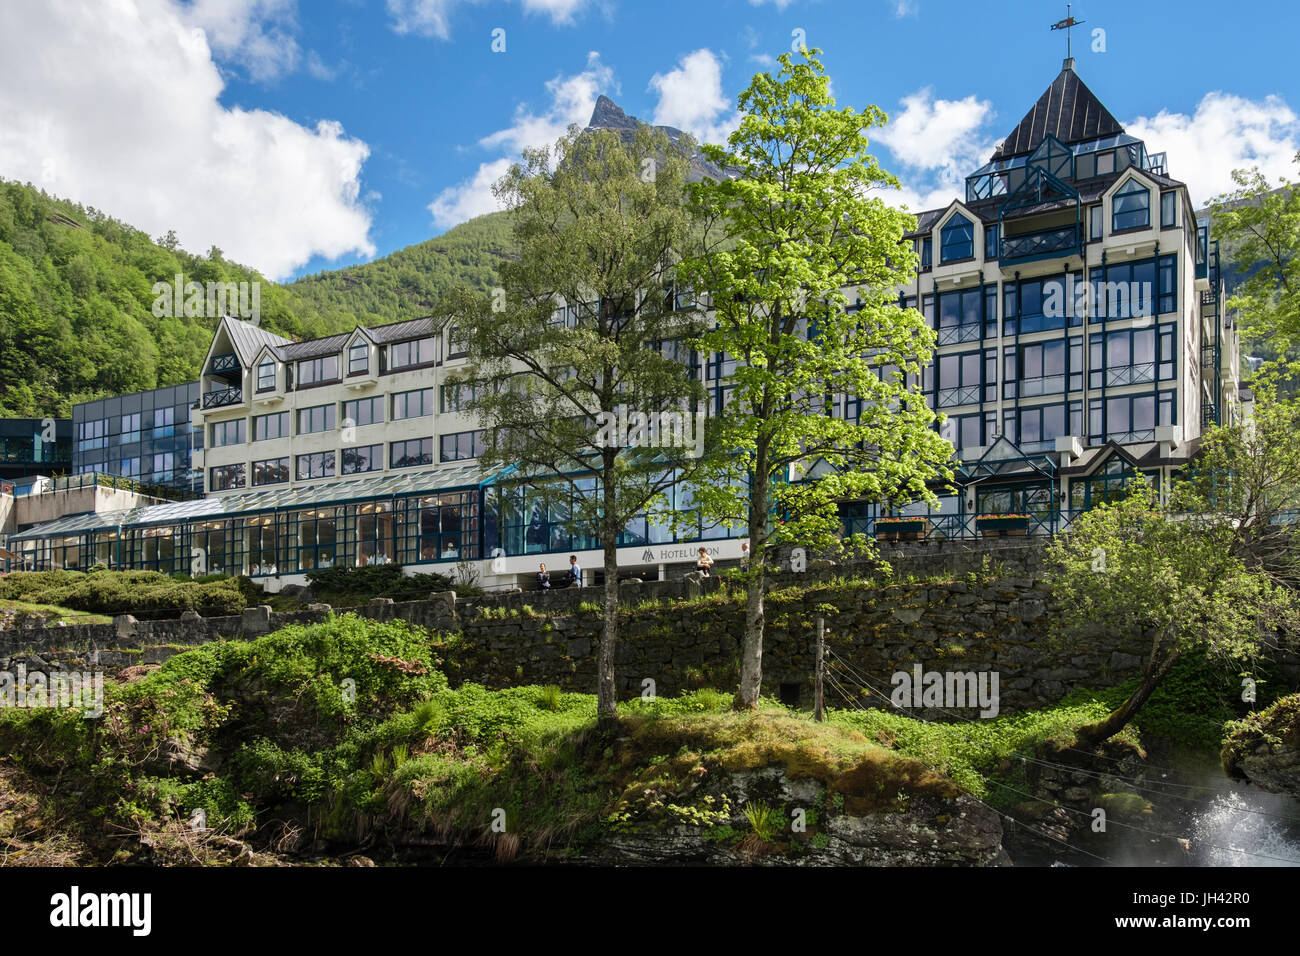 L'hôtel Union à côté de la rivière Geirangelva. La région de Sunnmøre, Geiranger, comté de Møre og Romsdal (Norvège, Scandinavie Banque D'Images